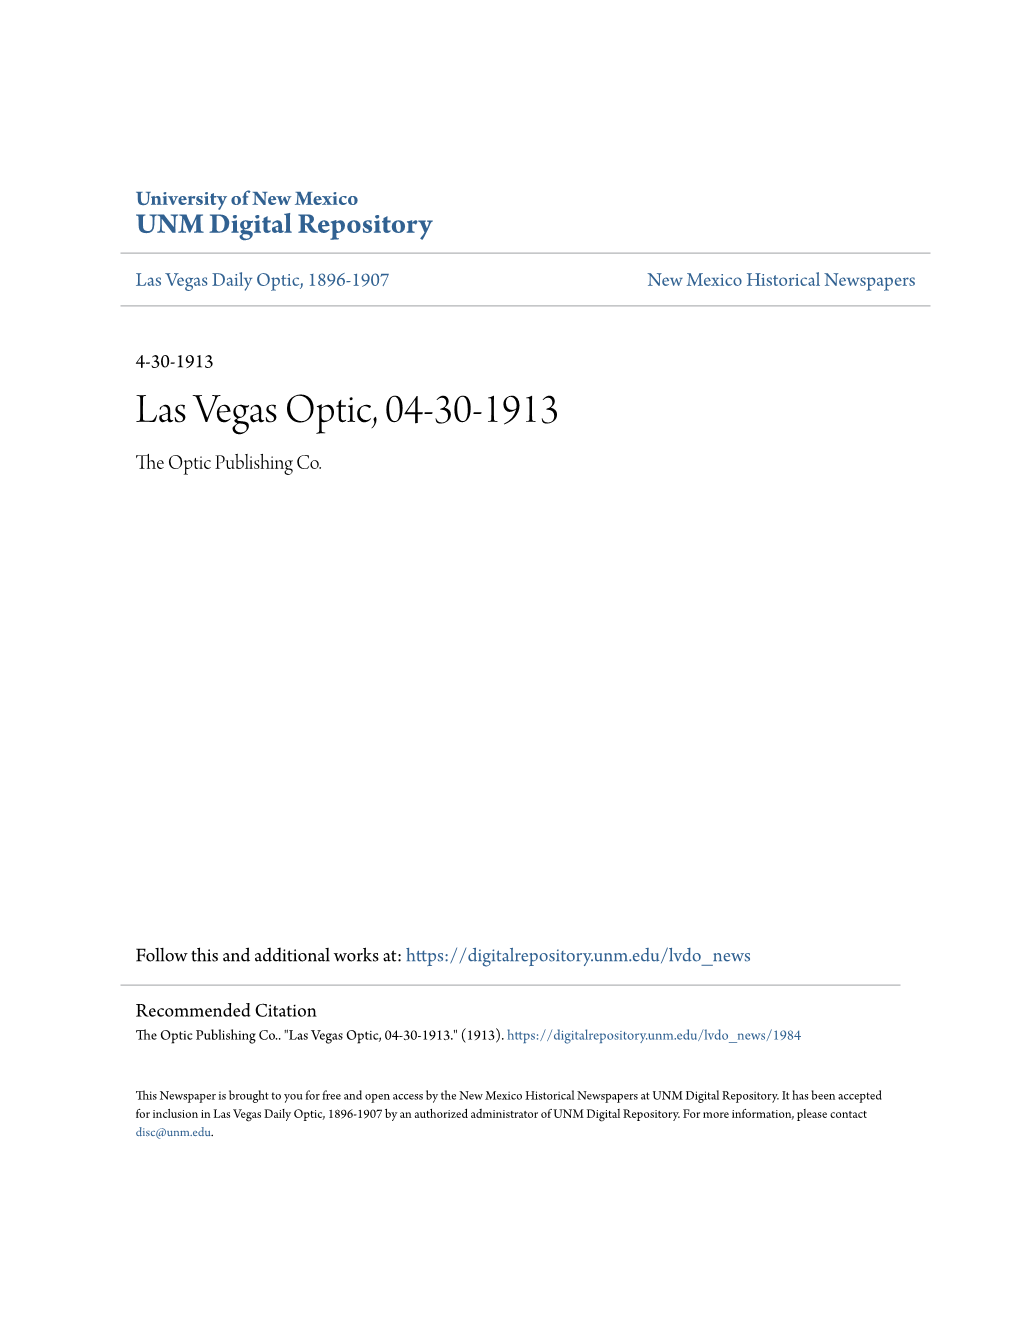 Las Vegas Optic, 04-30-1913 the Optic Publishing Co